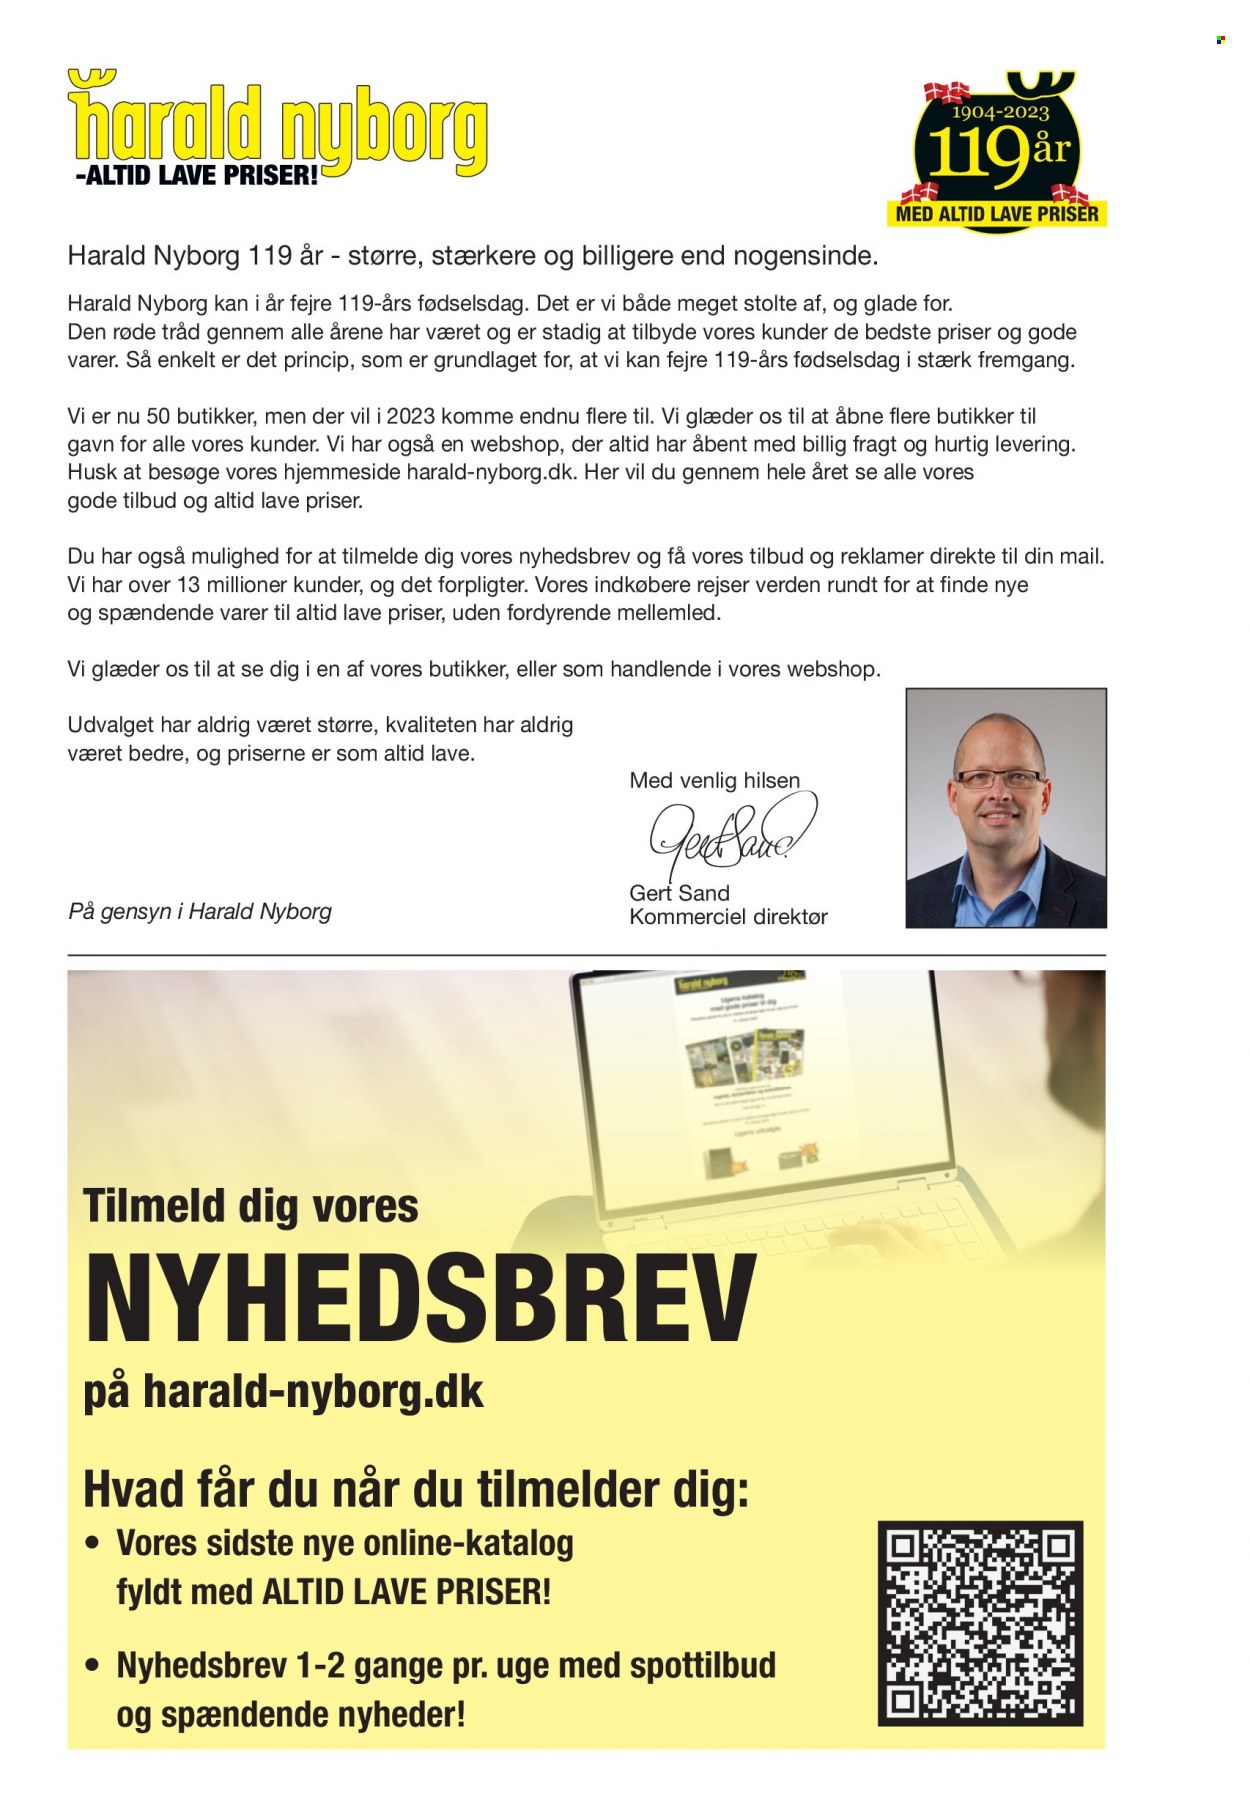 Harald Nyborg tilbudsavis . Side 2.